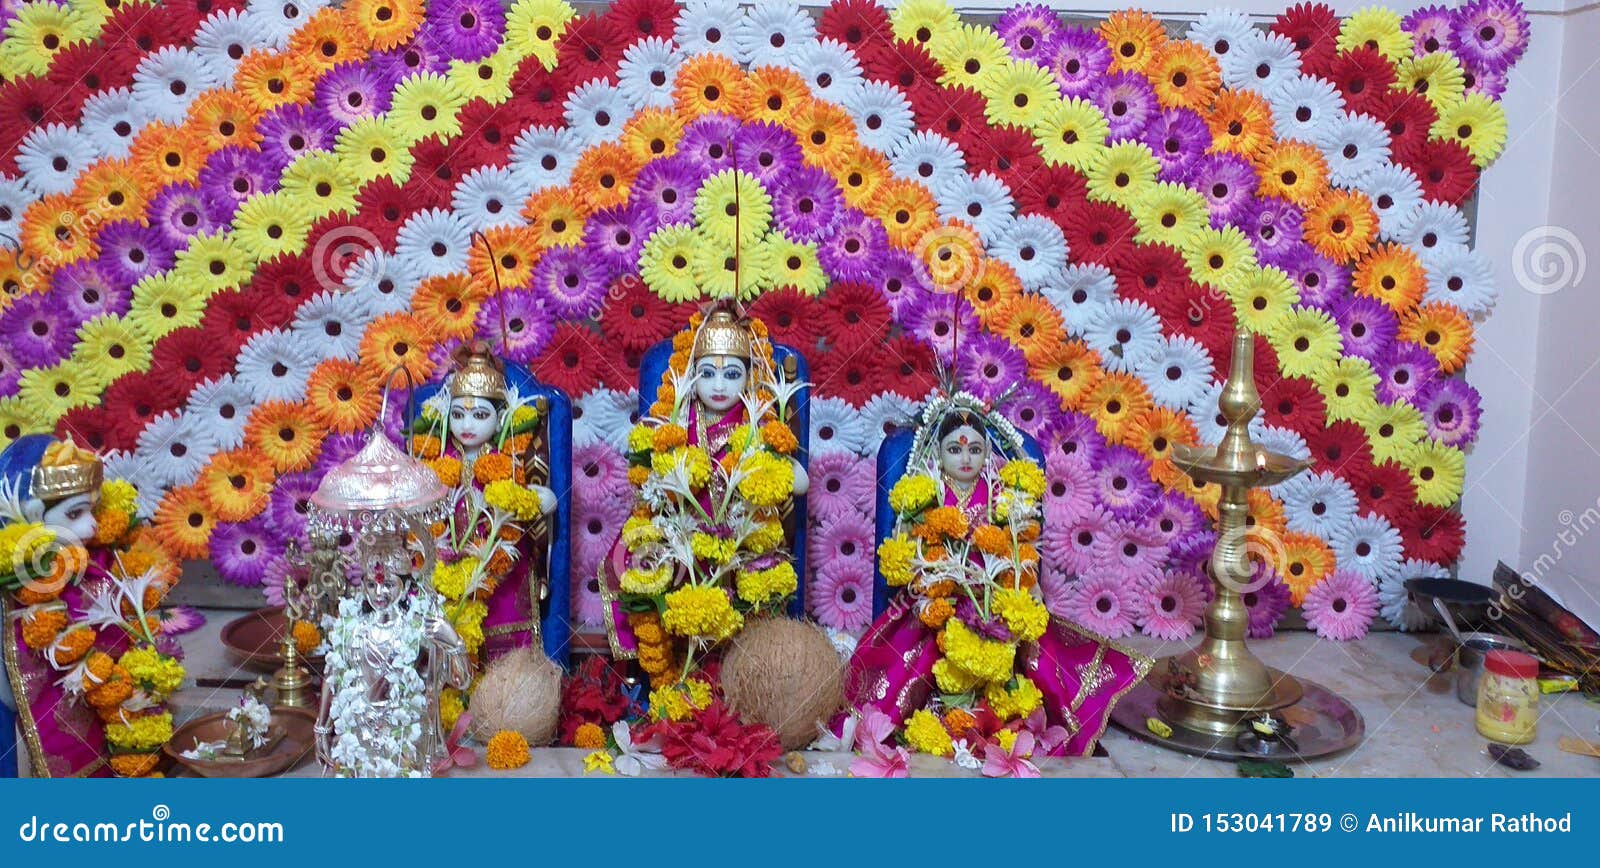 Indian God Rama photo stock image. Image of enjoy, beauty - 153041789